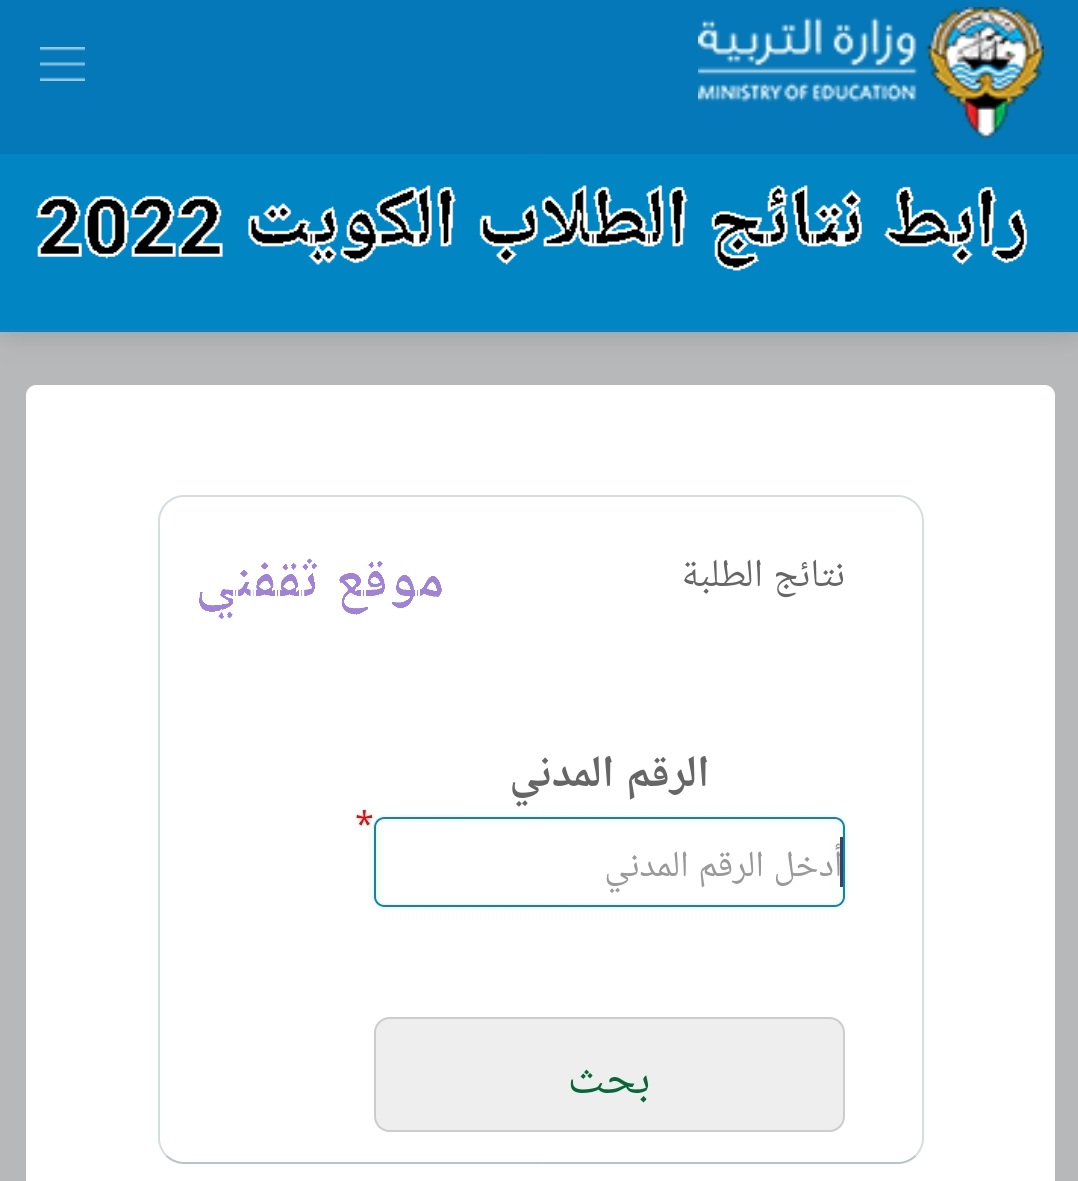 رابط نتائج الطلاب الكويت 2022 لاستخراج نتيجة الثانوية العامة 2022 Kuwait students results عبر موقع وزارة التربية